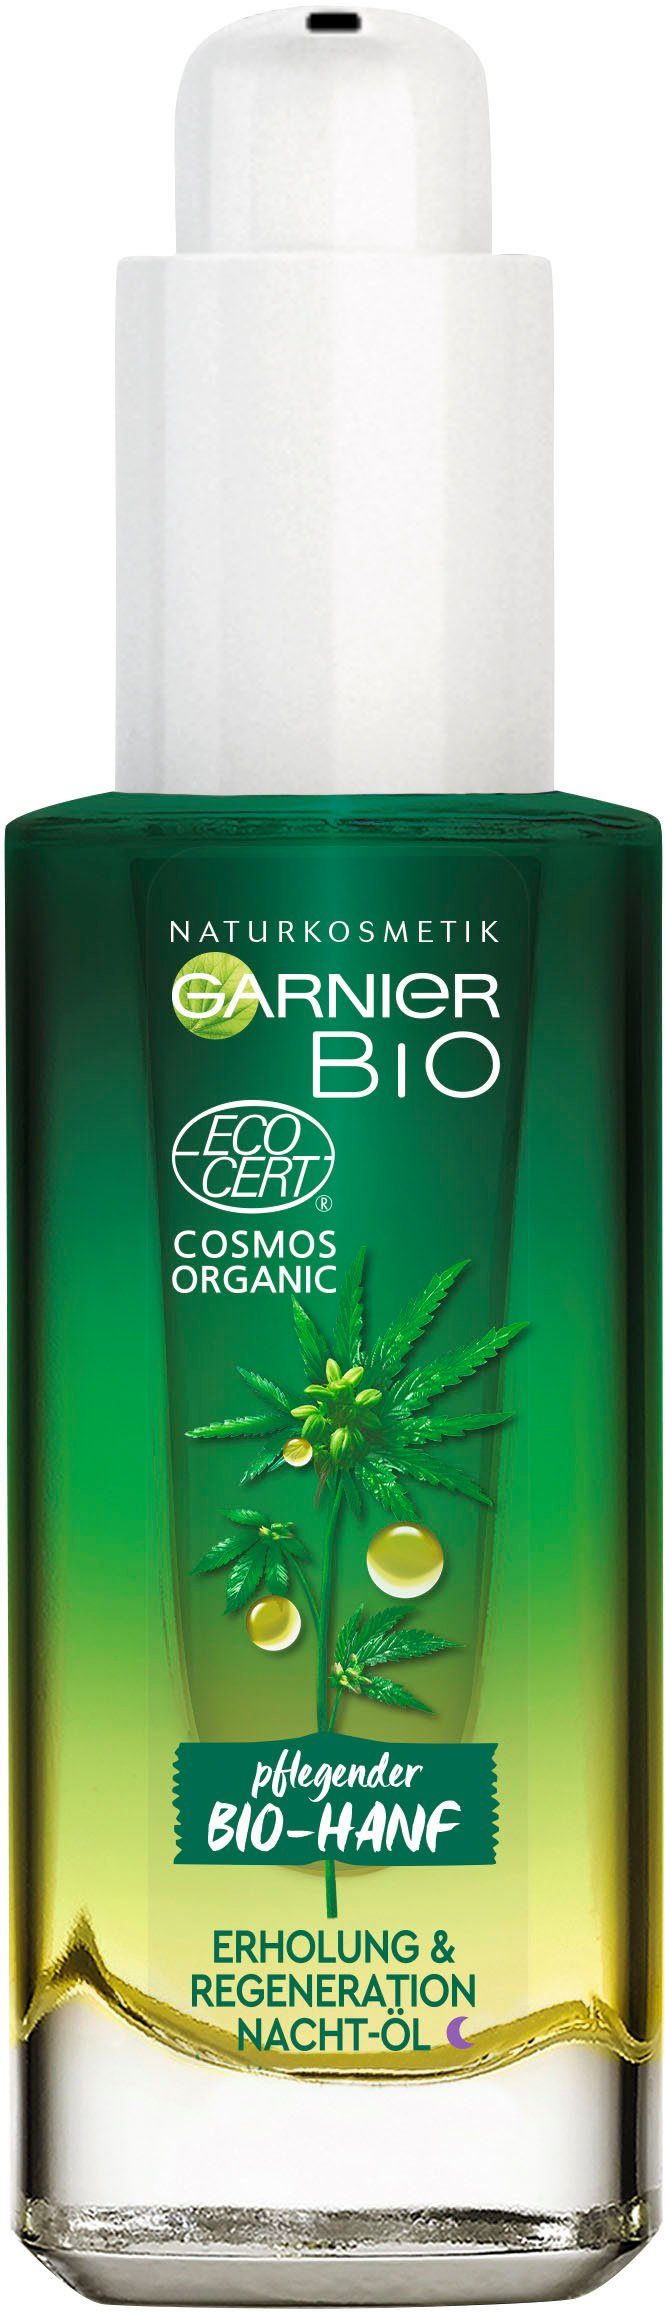 Regeneration Bio-Hanf Nacht-Öl, GARNIER Gesichtsöl & Naturkosmetik Erholung